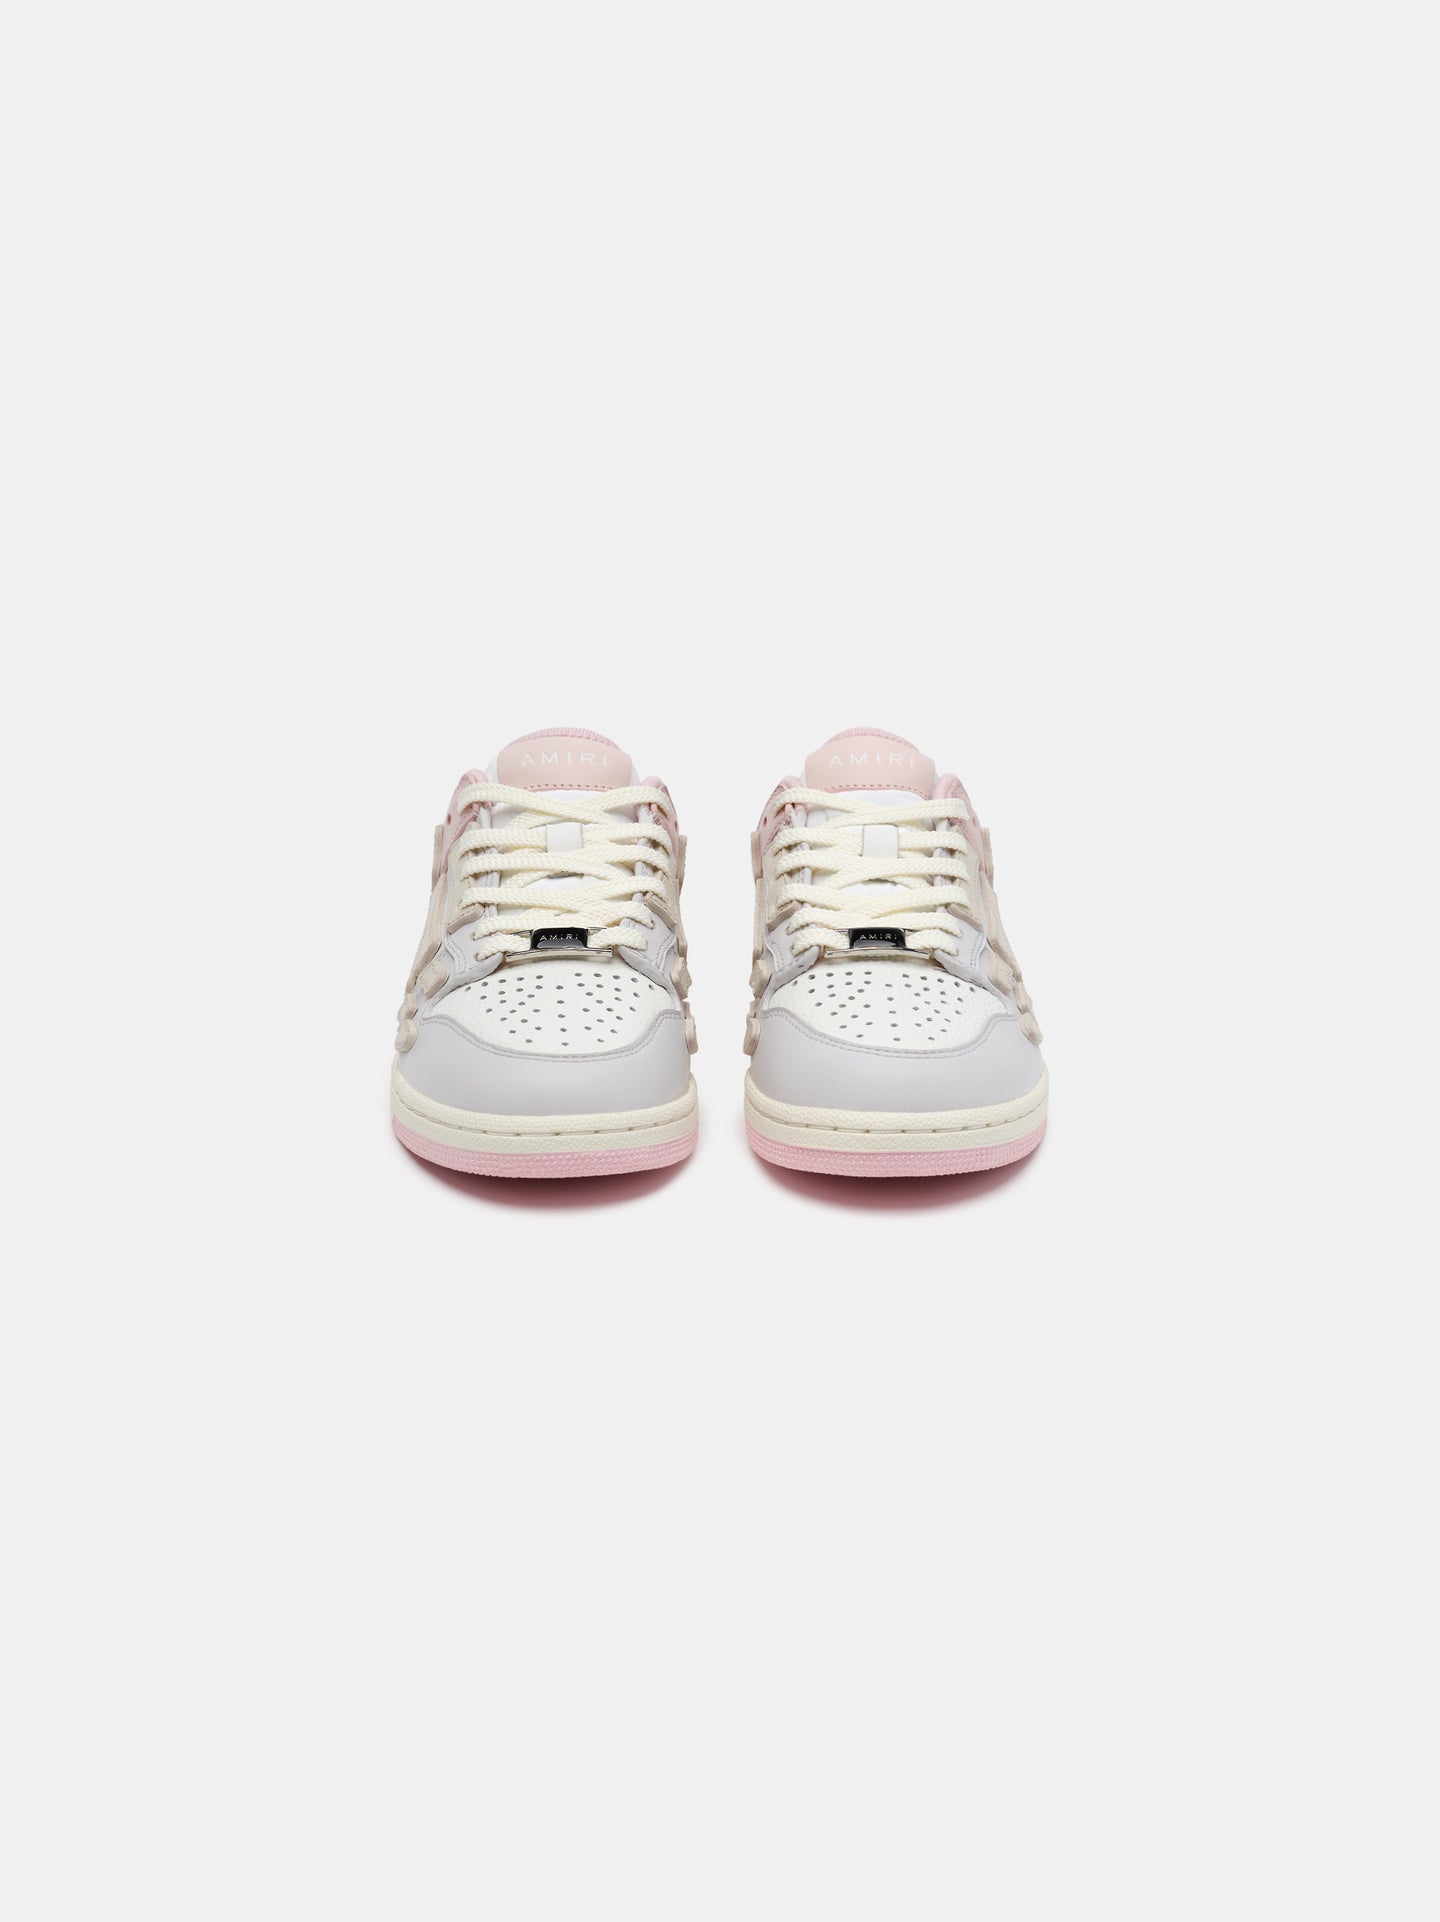 KIDS - TWO-TONE SKEL TOP LOW - Pink White Grey